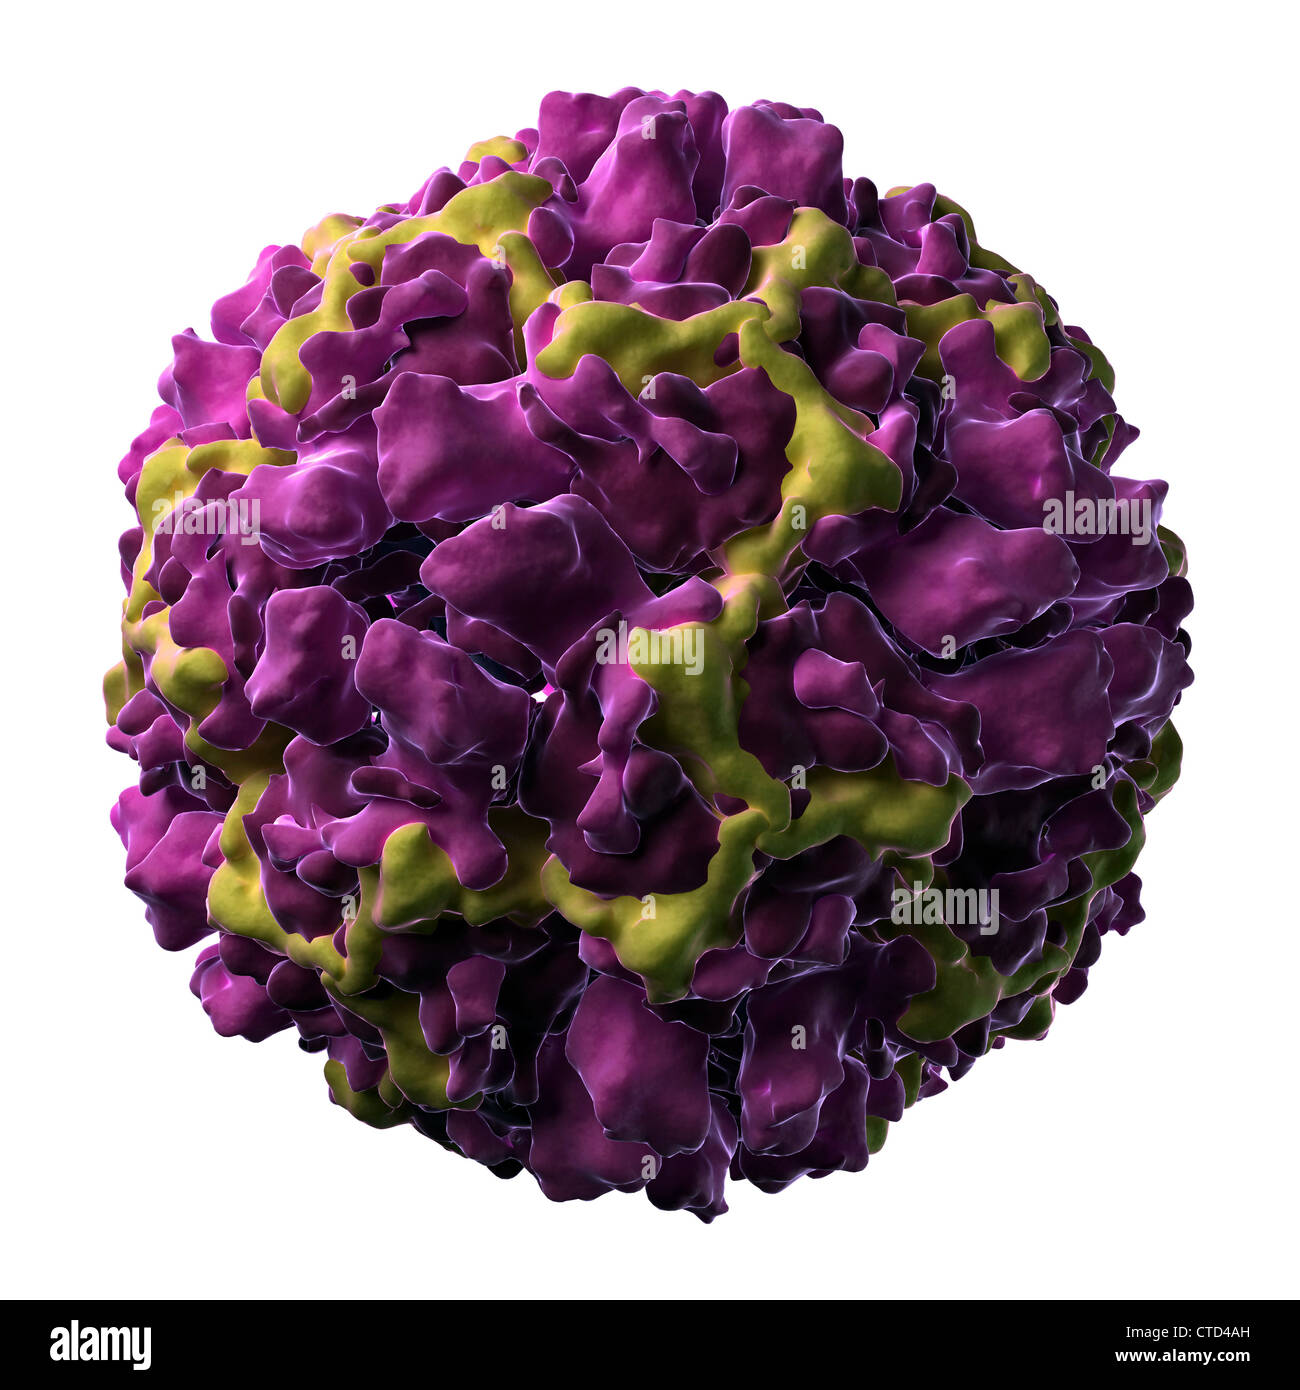 Human rhinovirus 16 particle Stock Photo